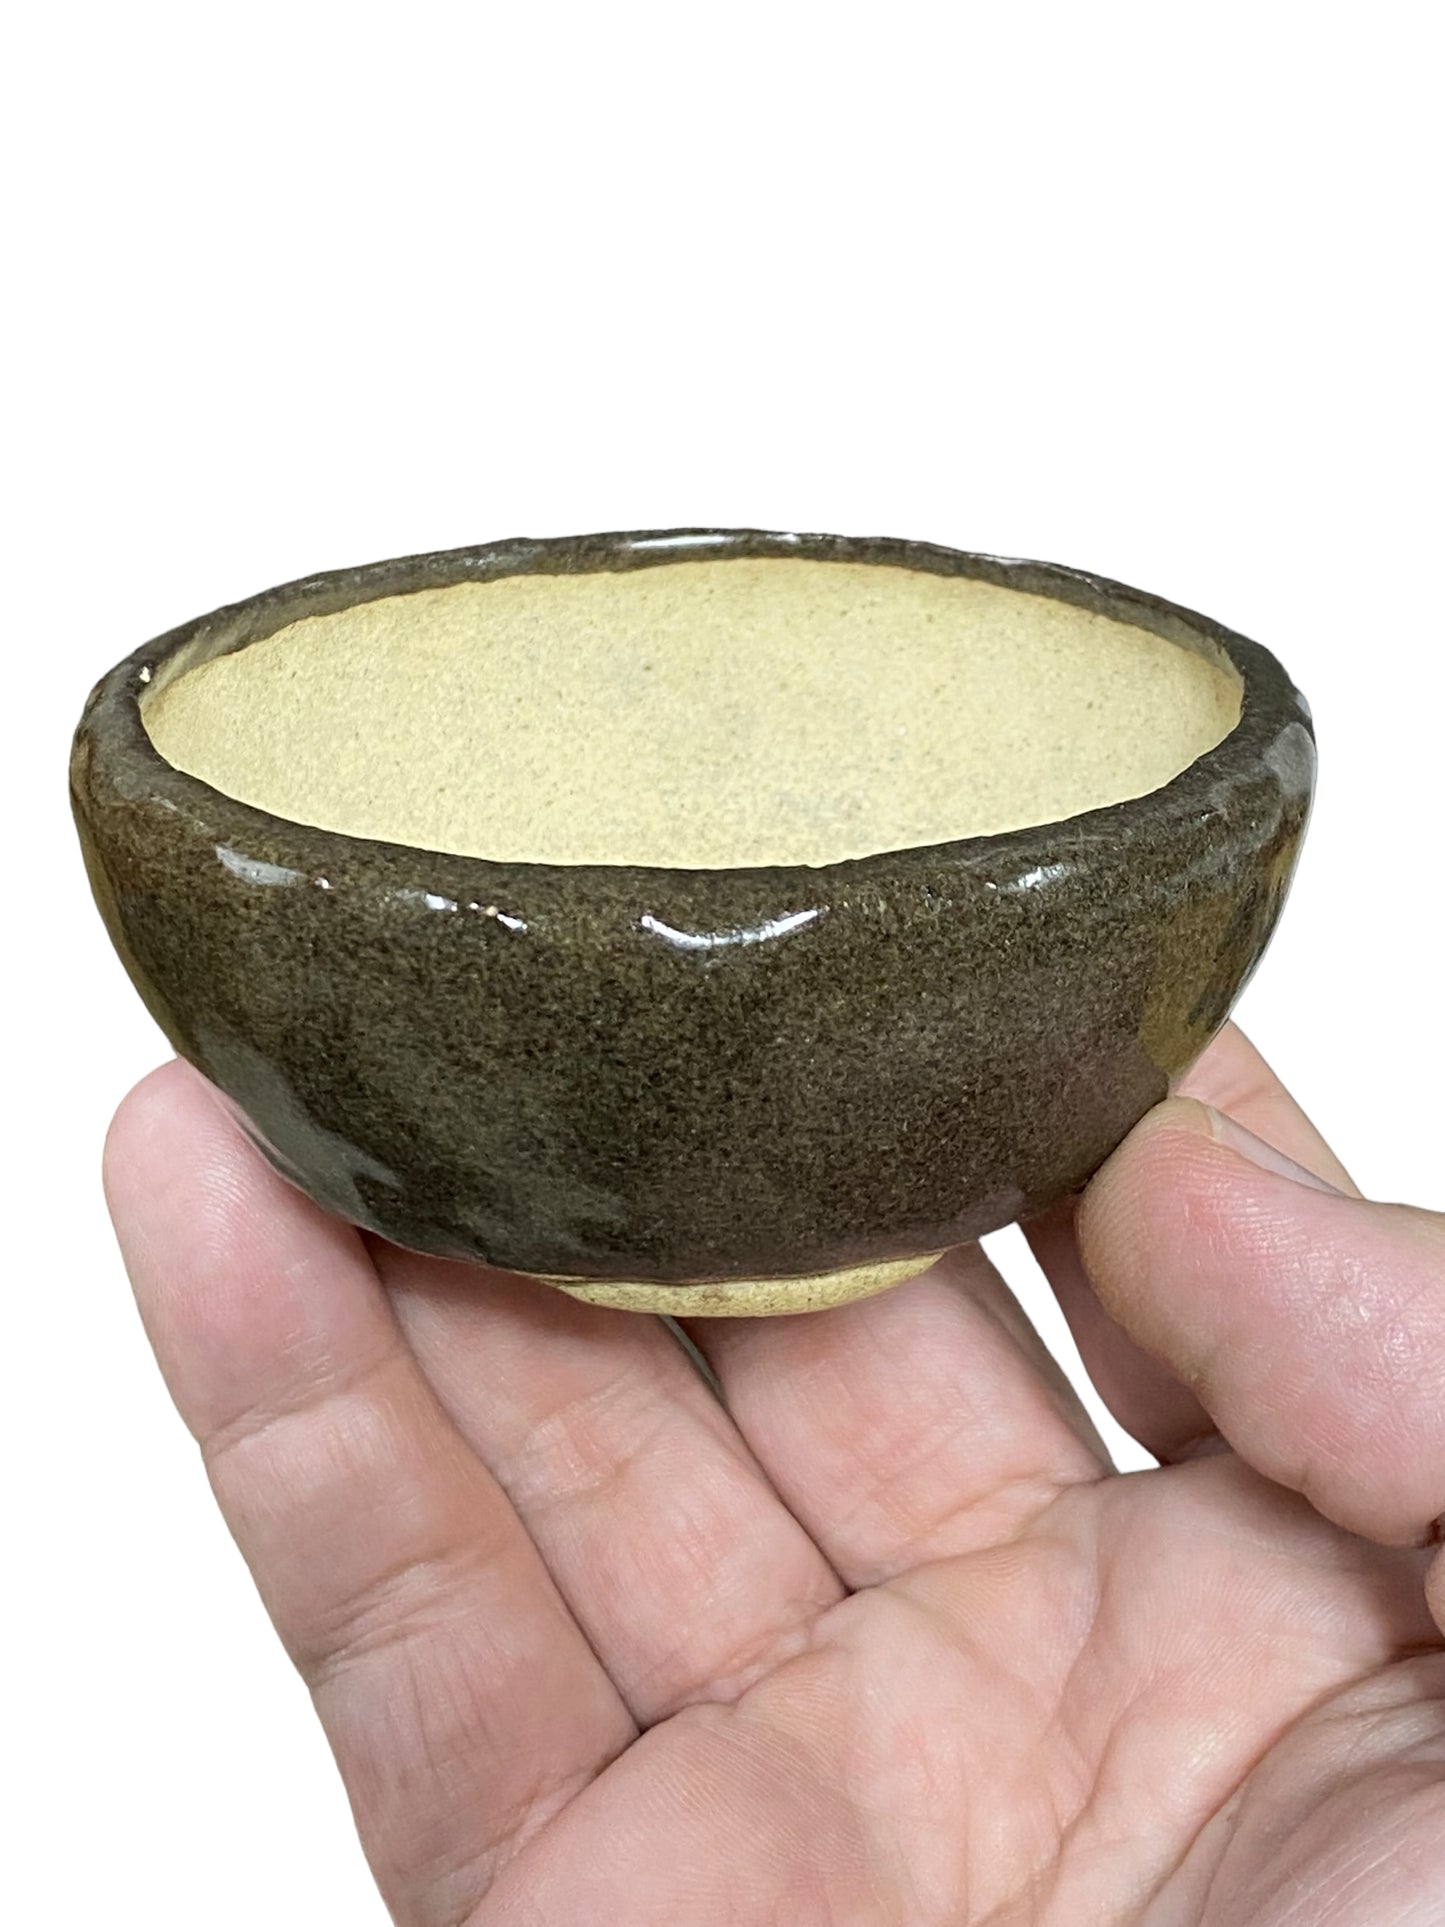 Kousen - Shohin Glazed Bowl Bonsai Pot